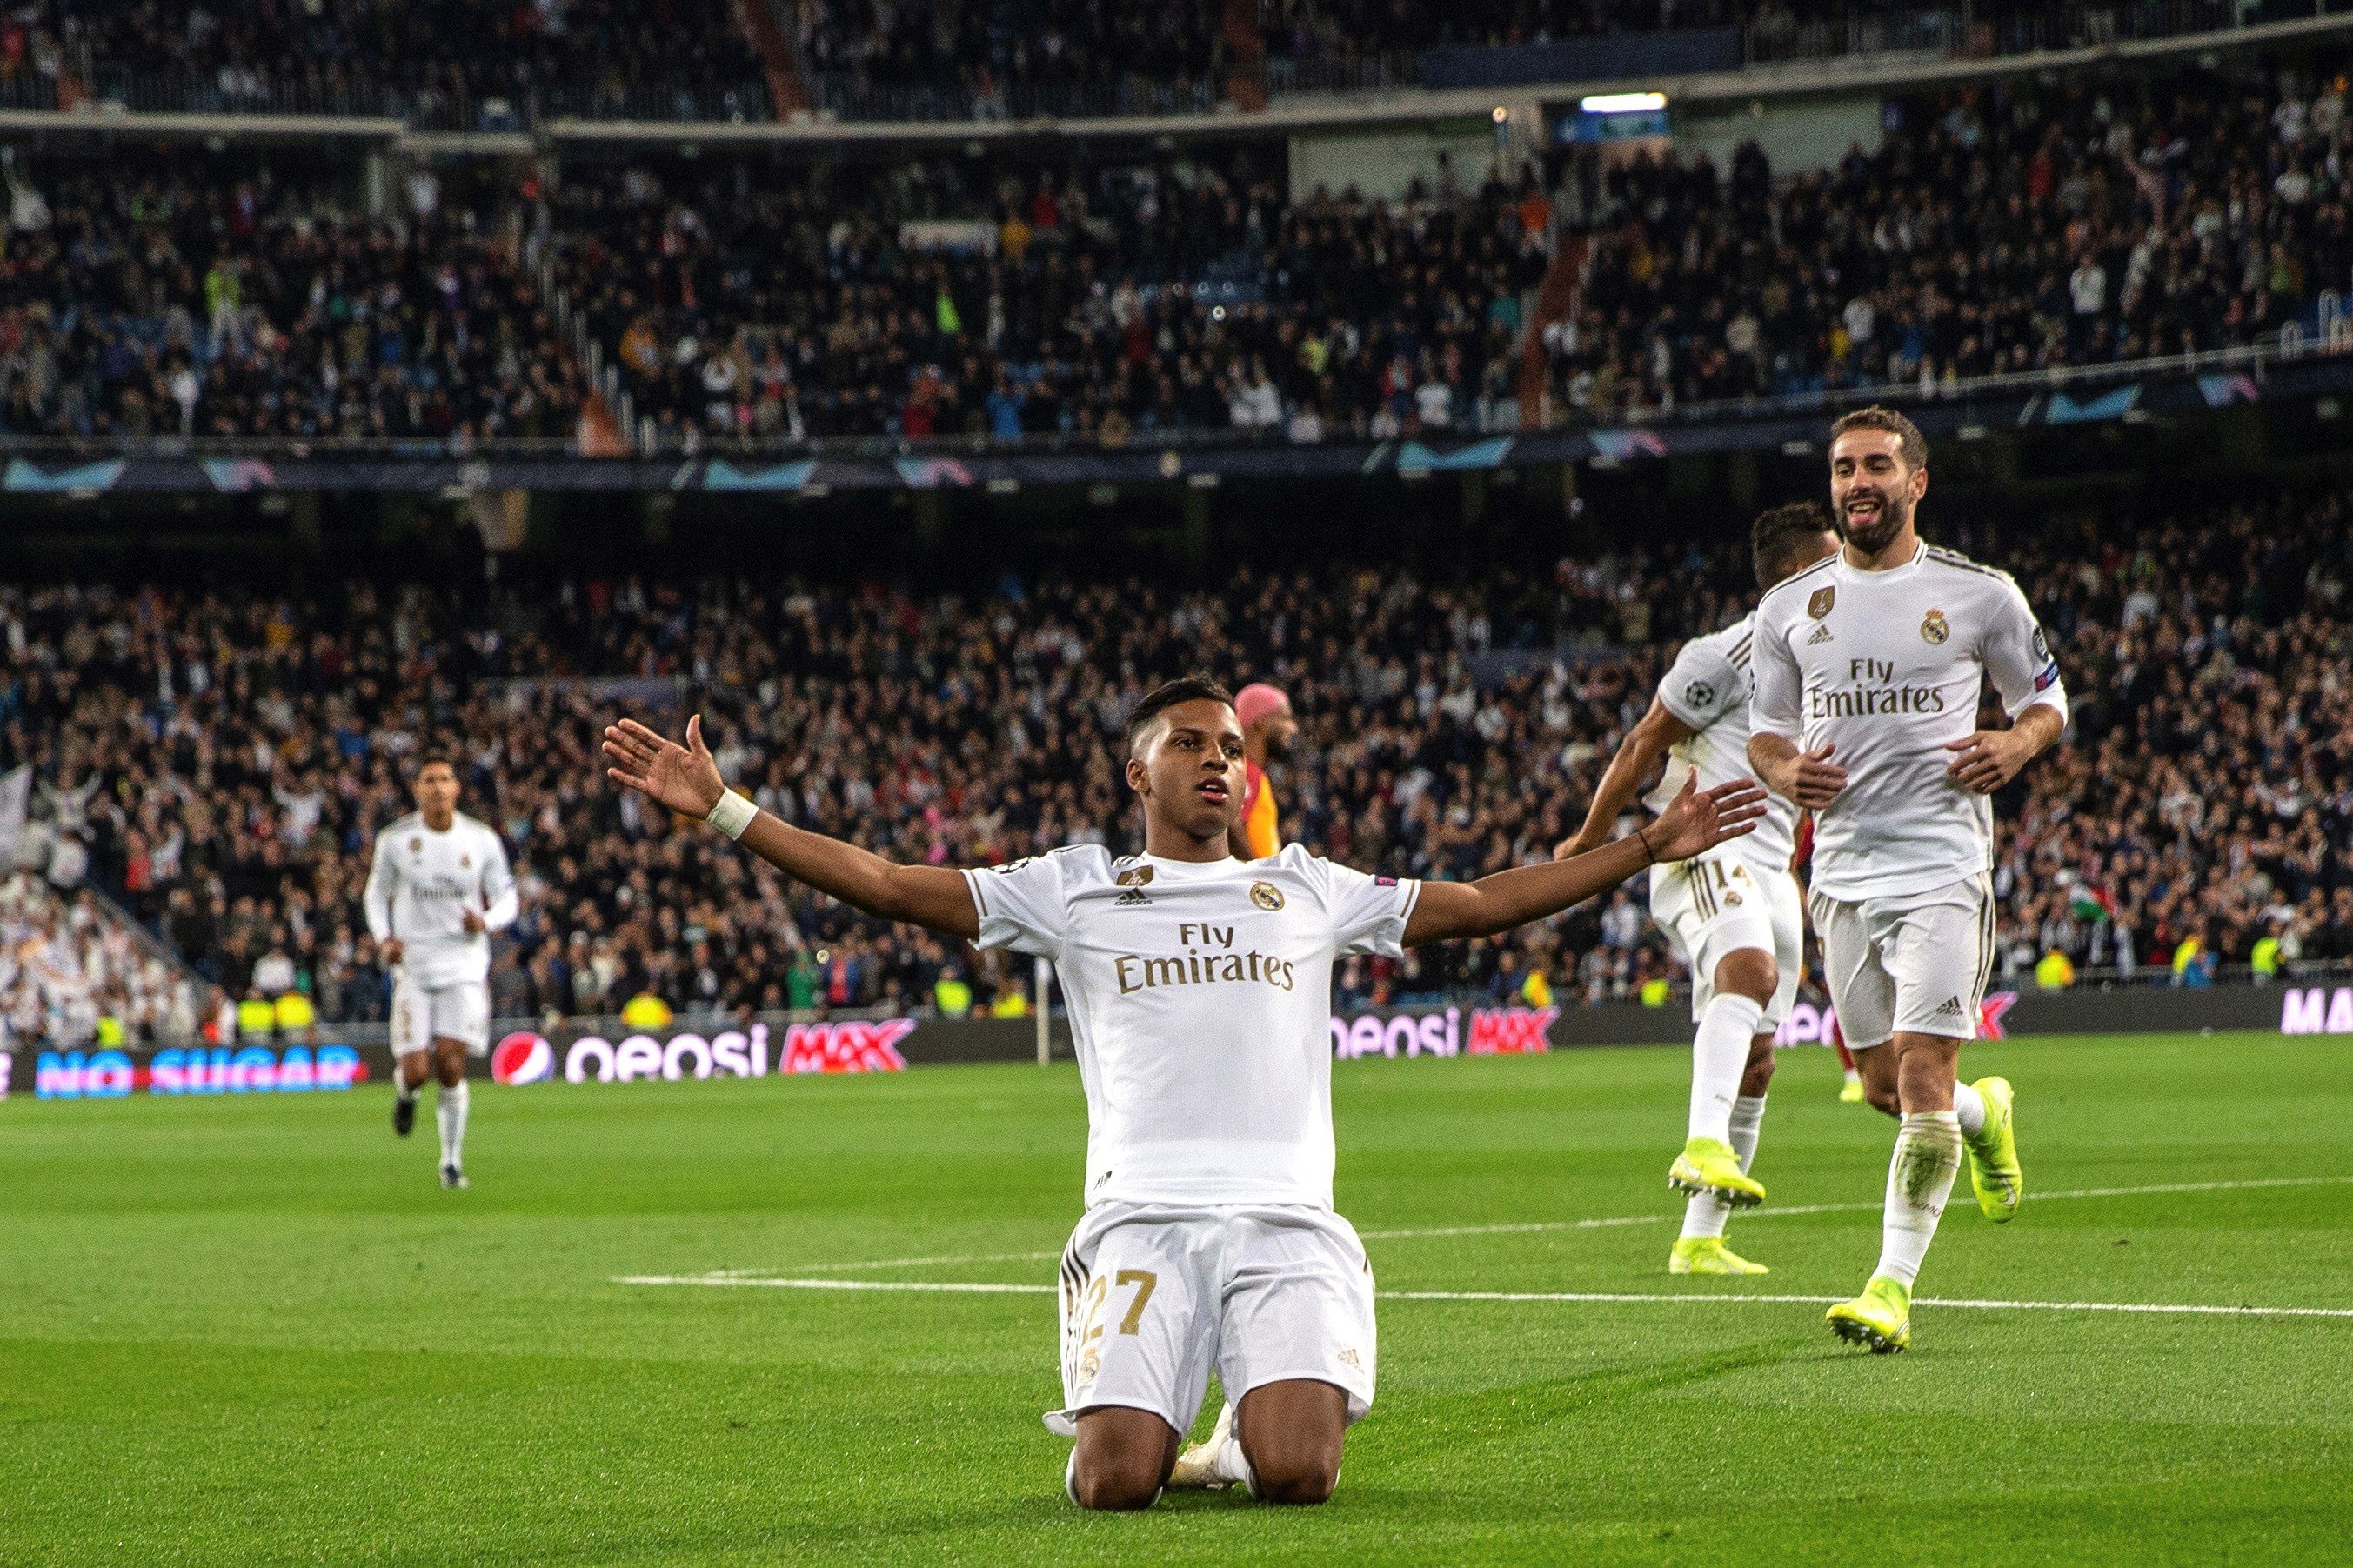 El Madrid golea y vuelve a ganar en la Champions un año después (6-0)